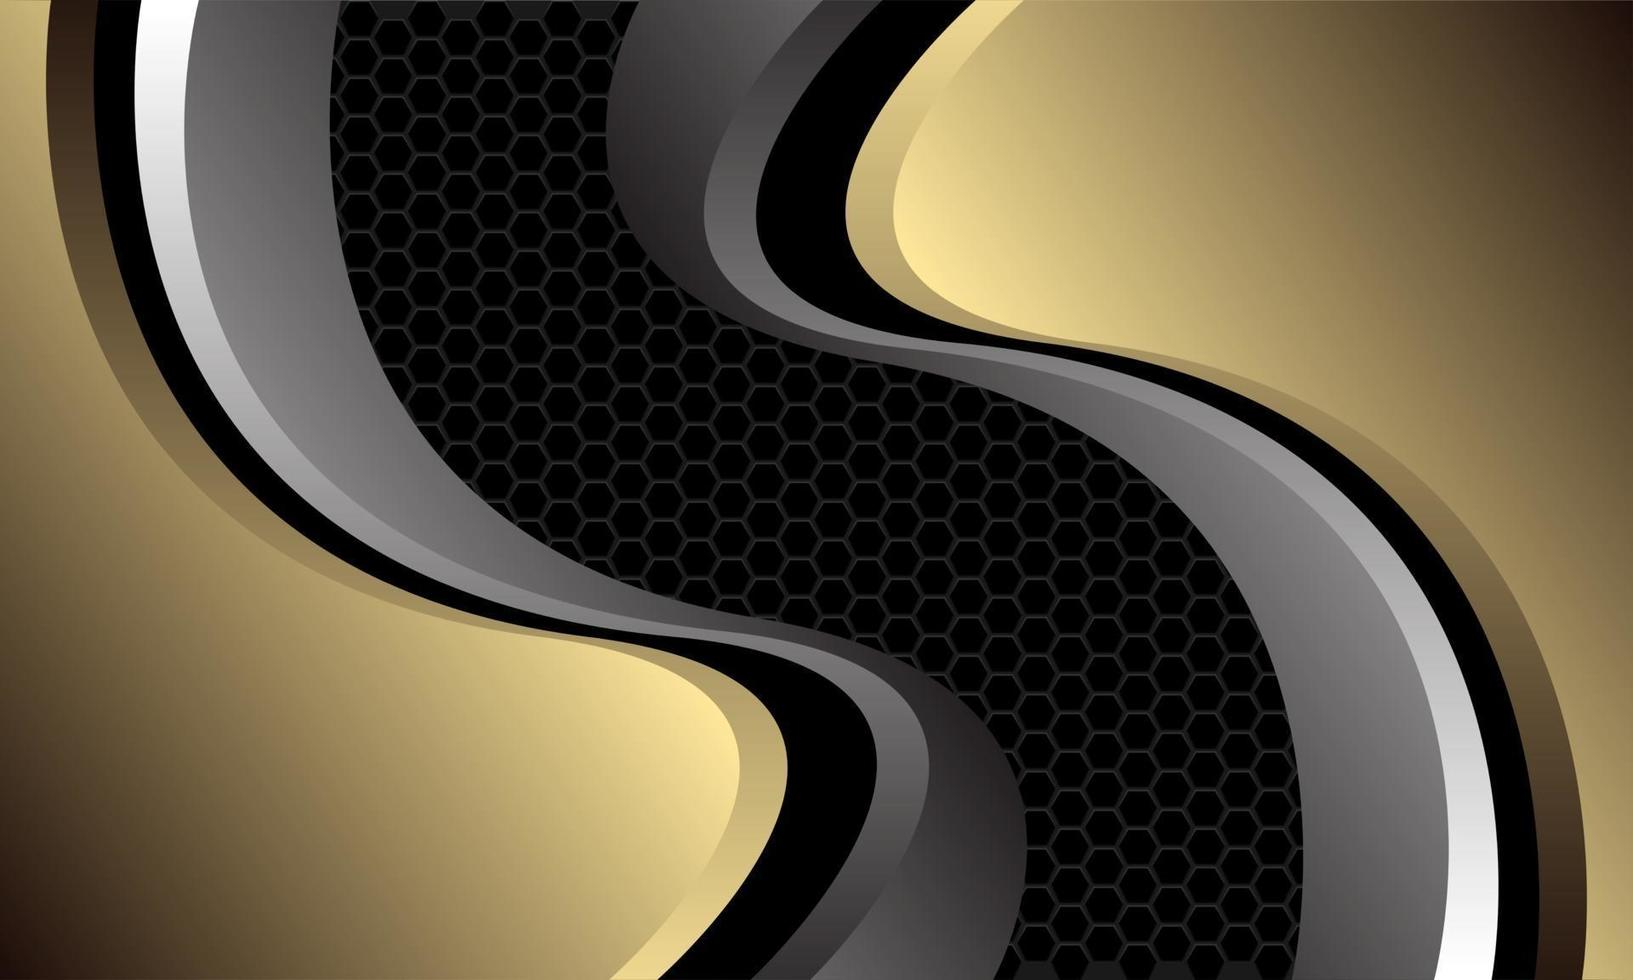 Abstrait courbe métallique gris doré sur maille hexagonale gris foncé modèle design luxe moderne fond futuriste illustration vectorielle vecteur